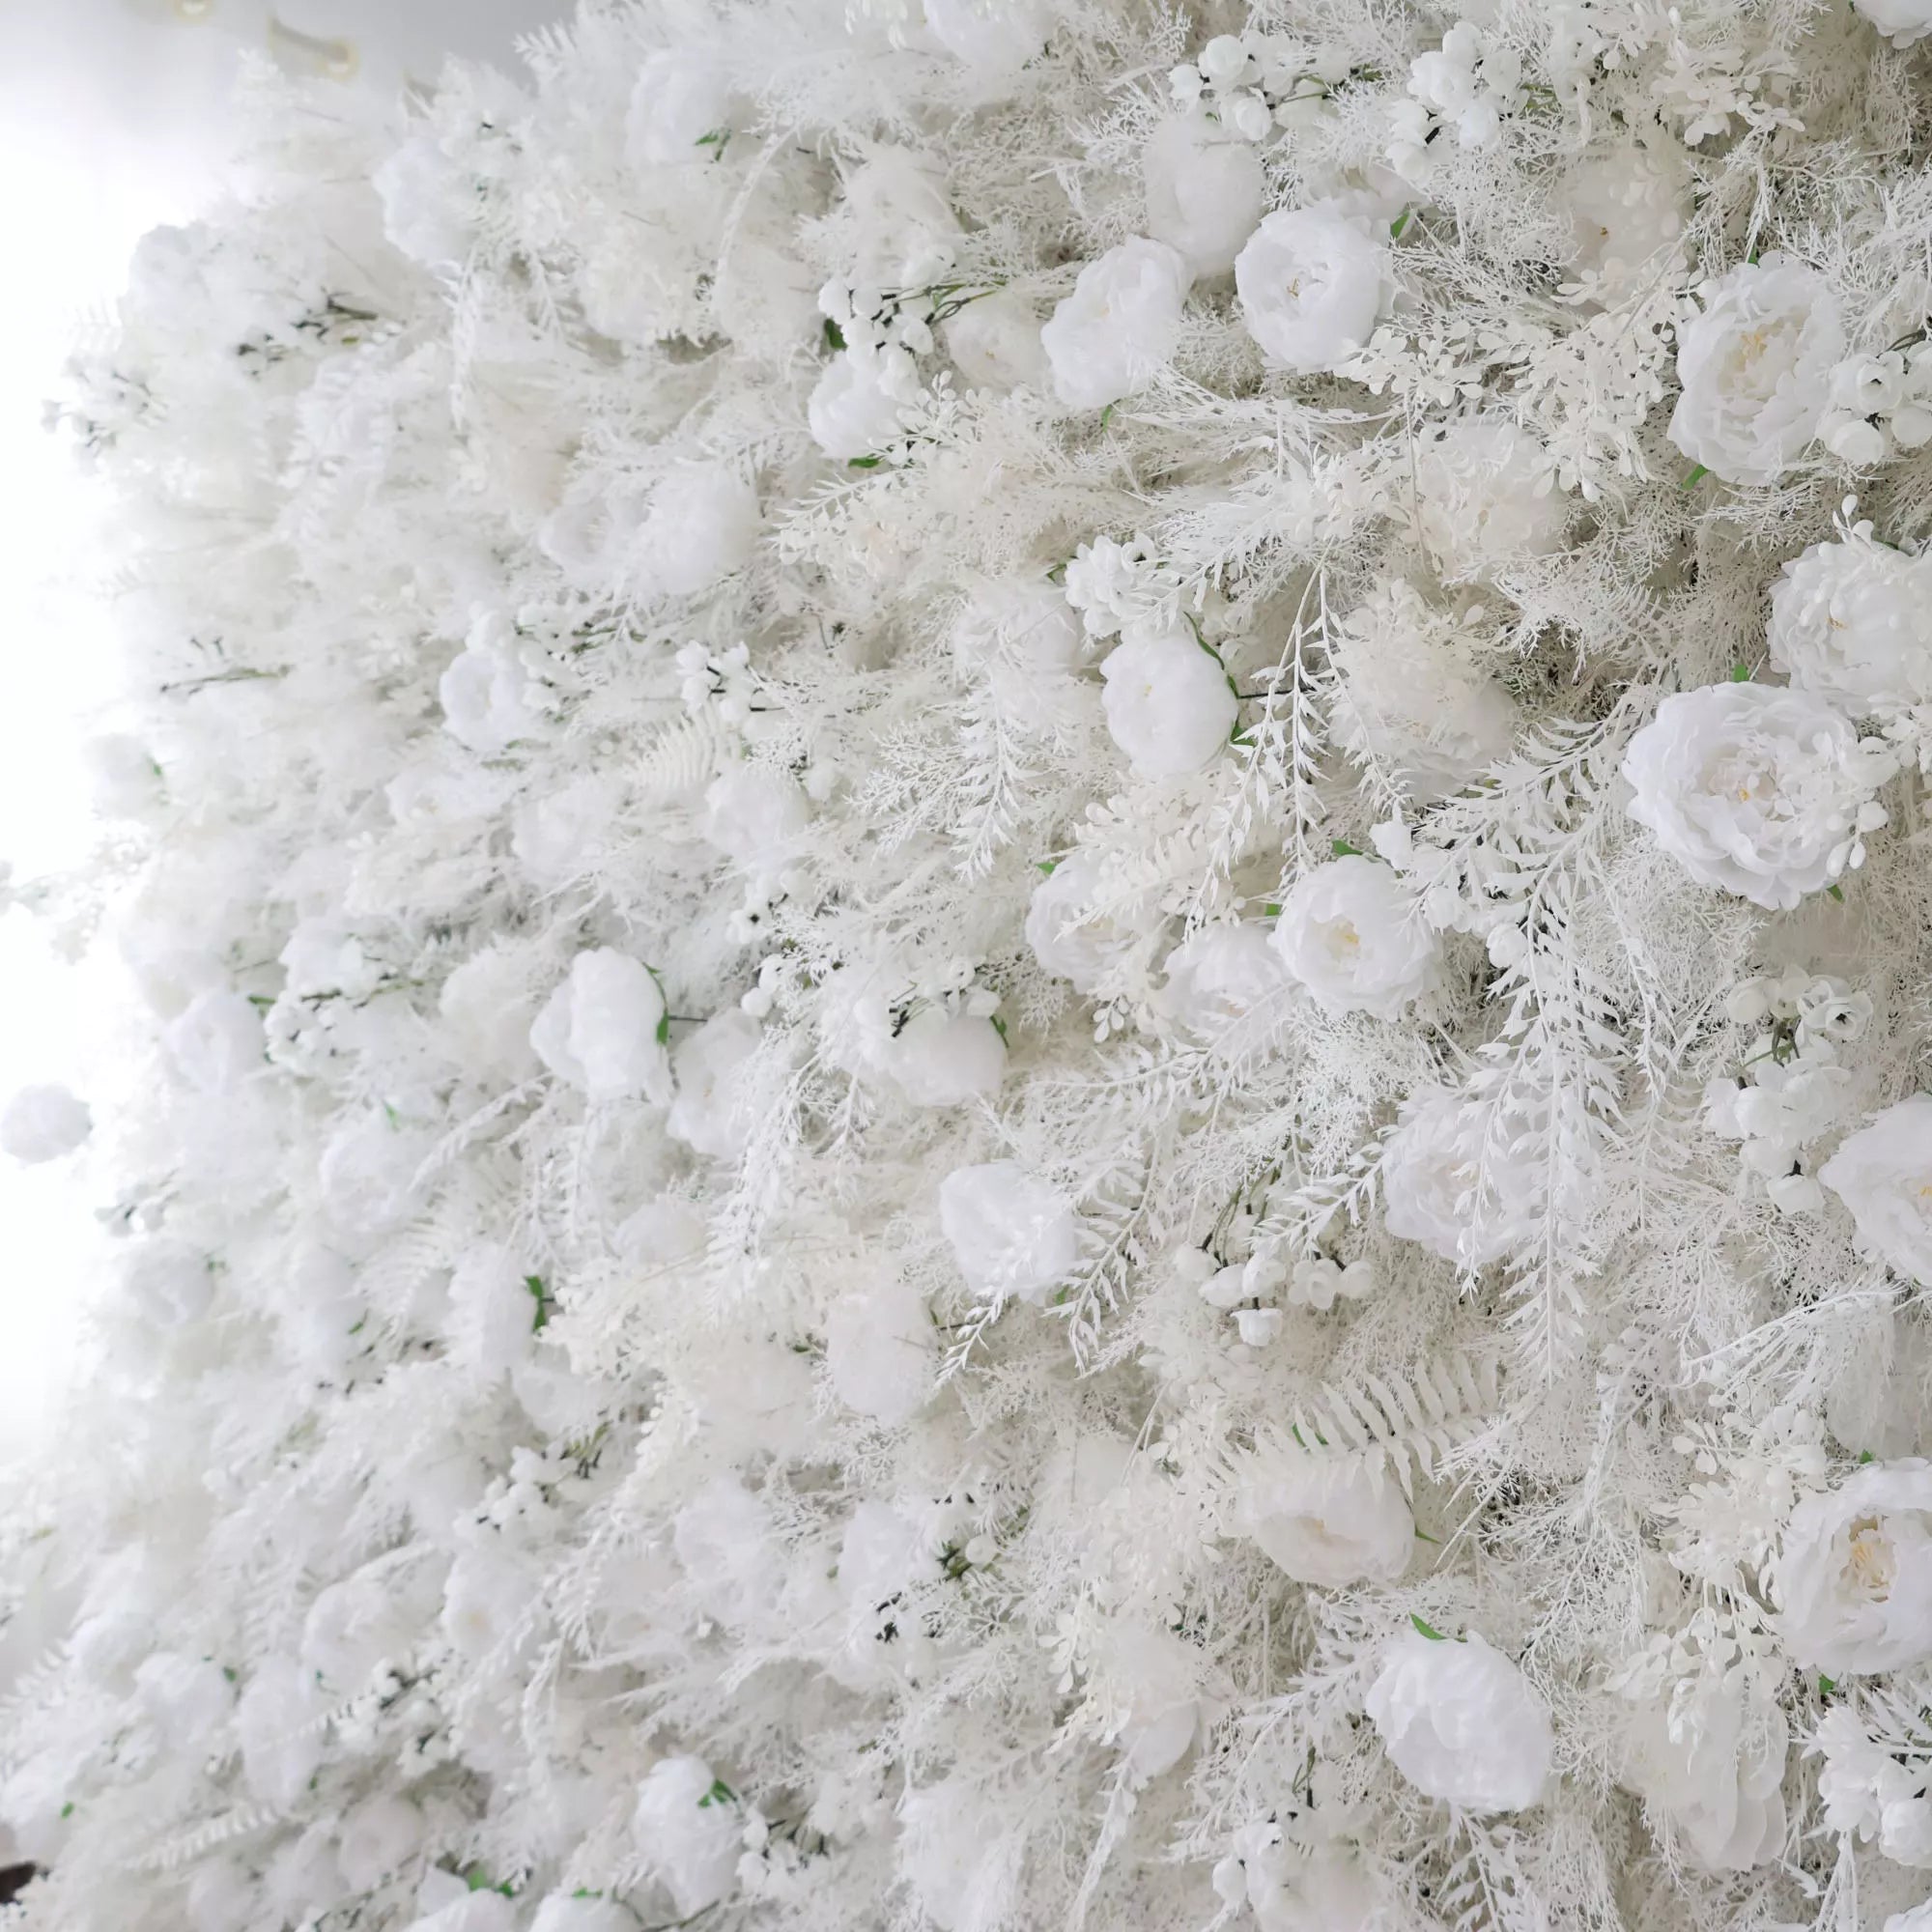 جدار زهور فالار الأبيض الثلجي مع لهجات السرخس الفاترة: التقاط جوهر الشتاء لللوكسي